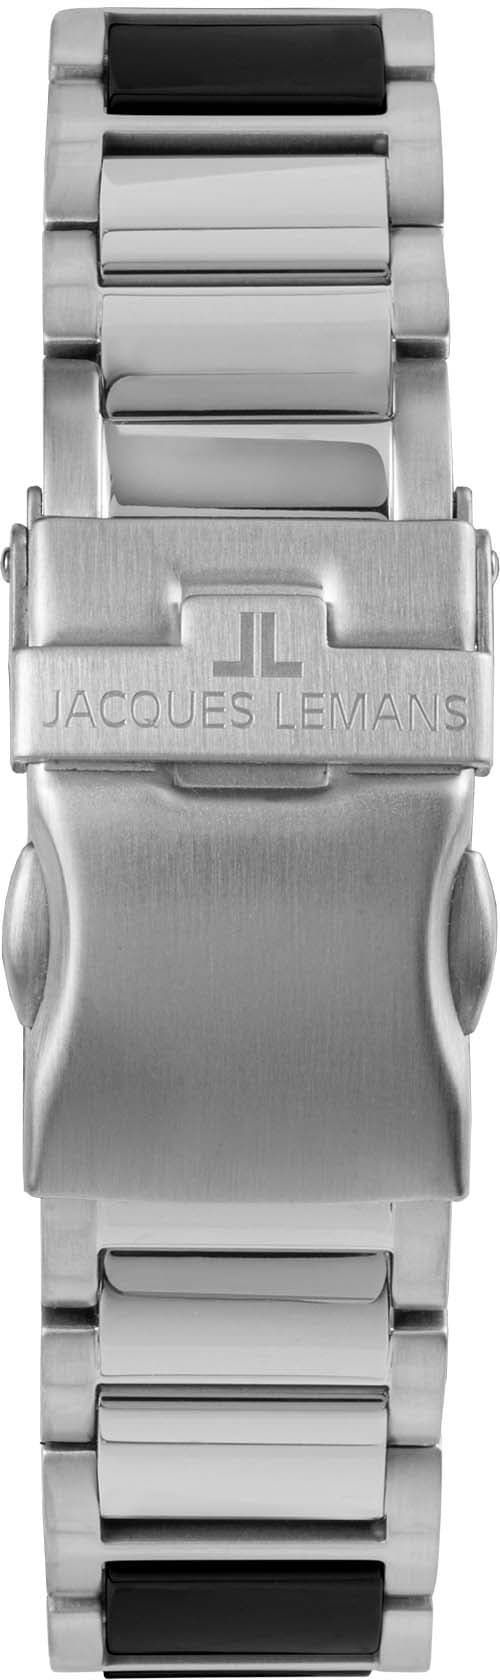 Jacques Lemans Keramikuhr »Liverpool, 42-12A« online kaufen | BAUR